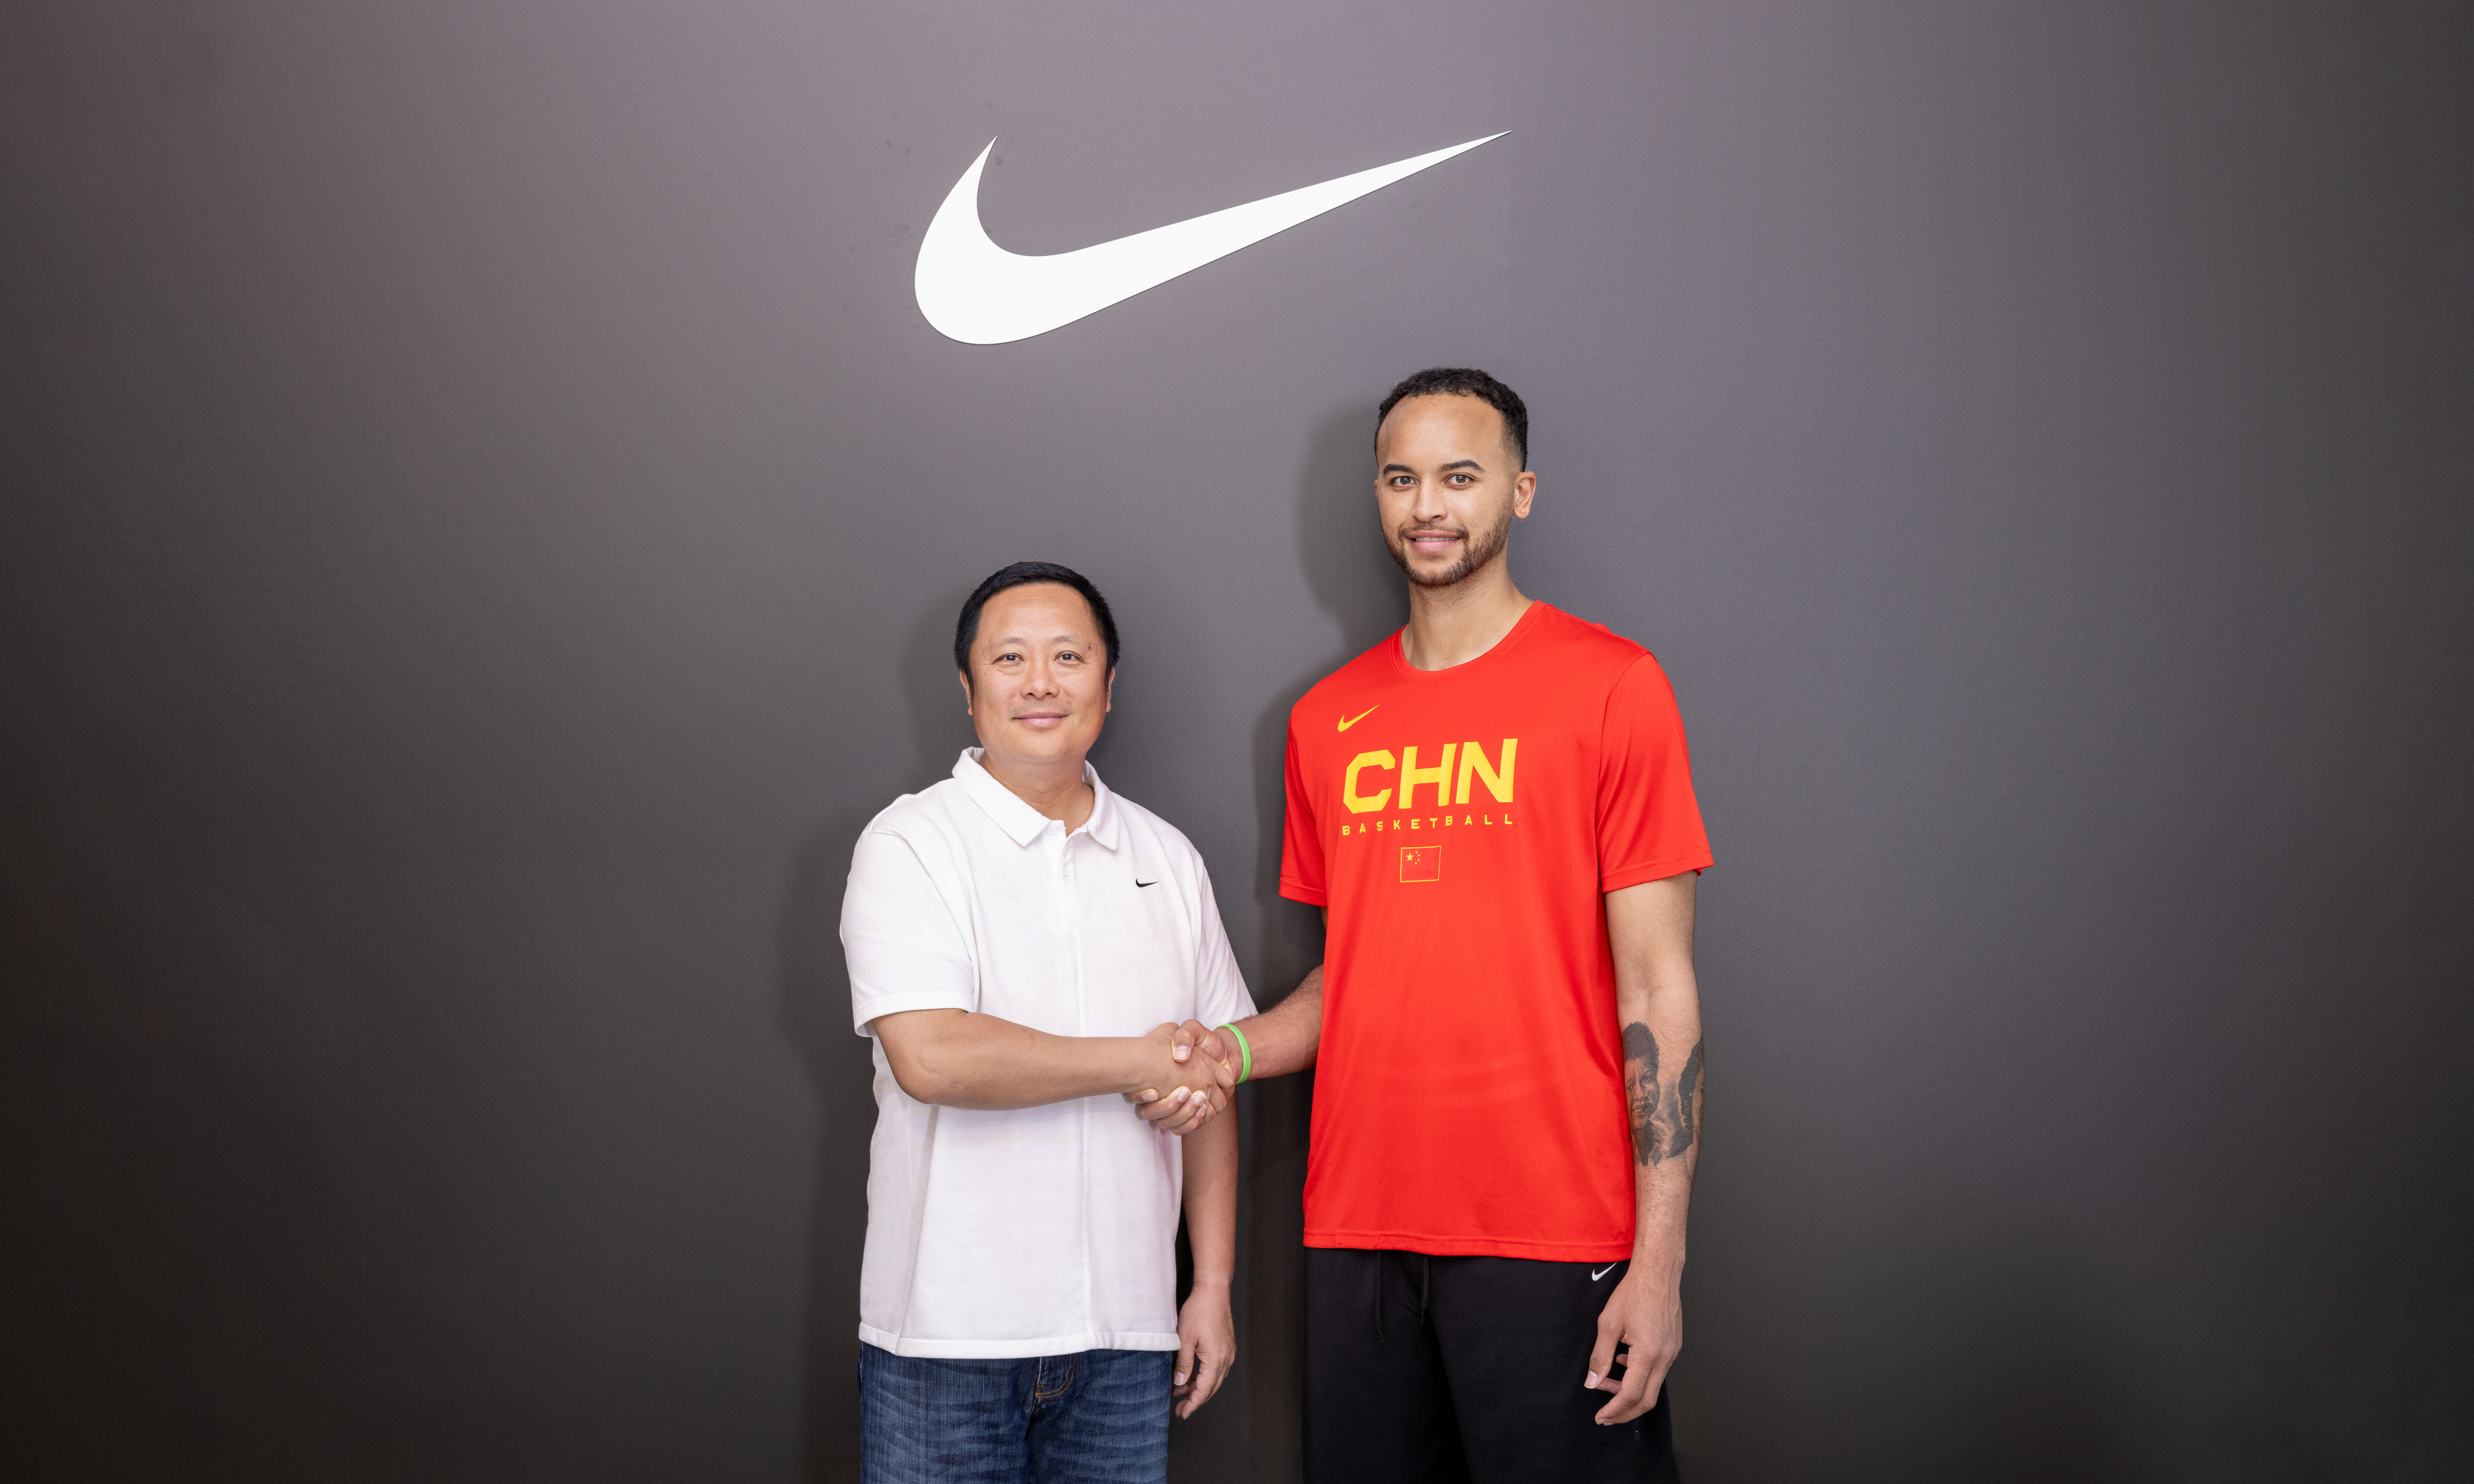 来了！中国球员李凯尔正式加入 Nike 大家庭